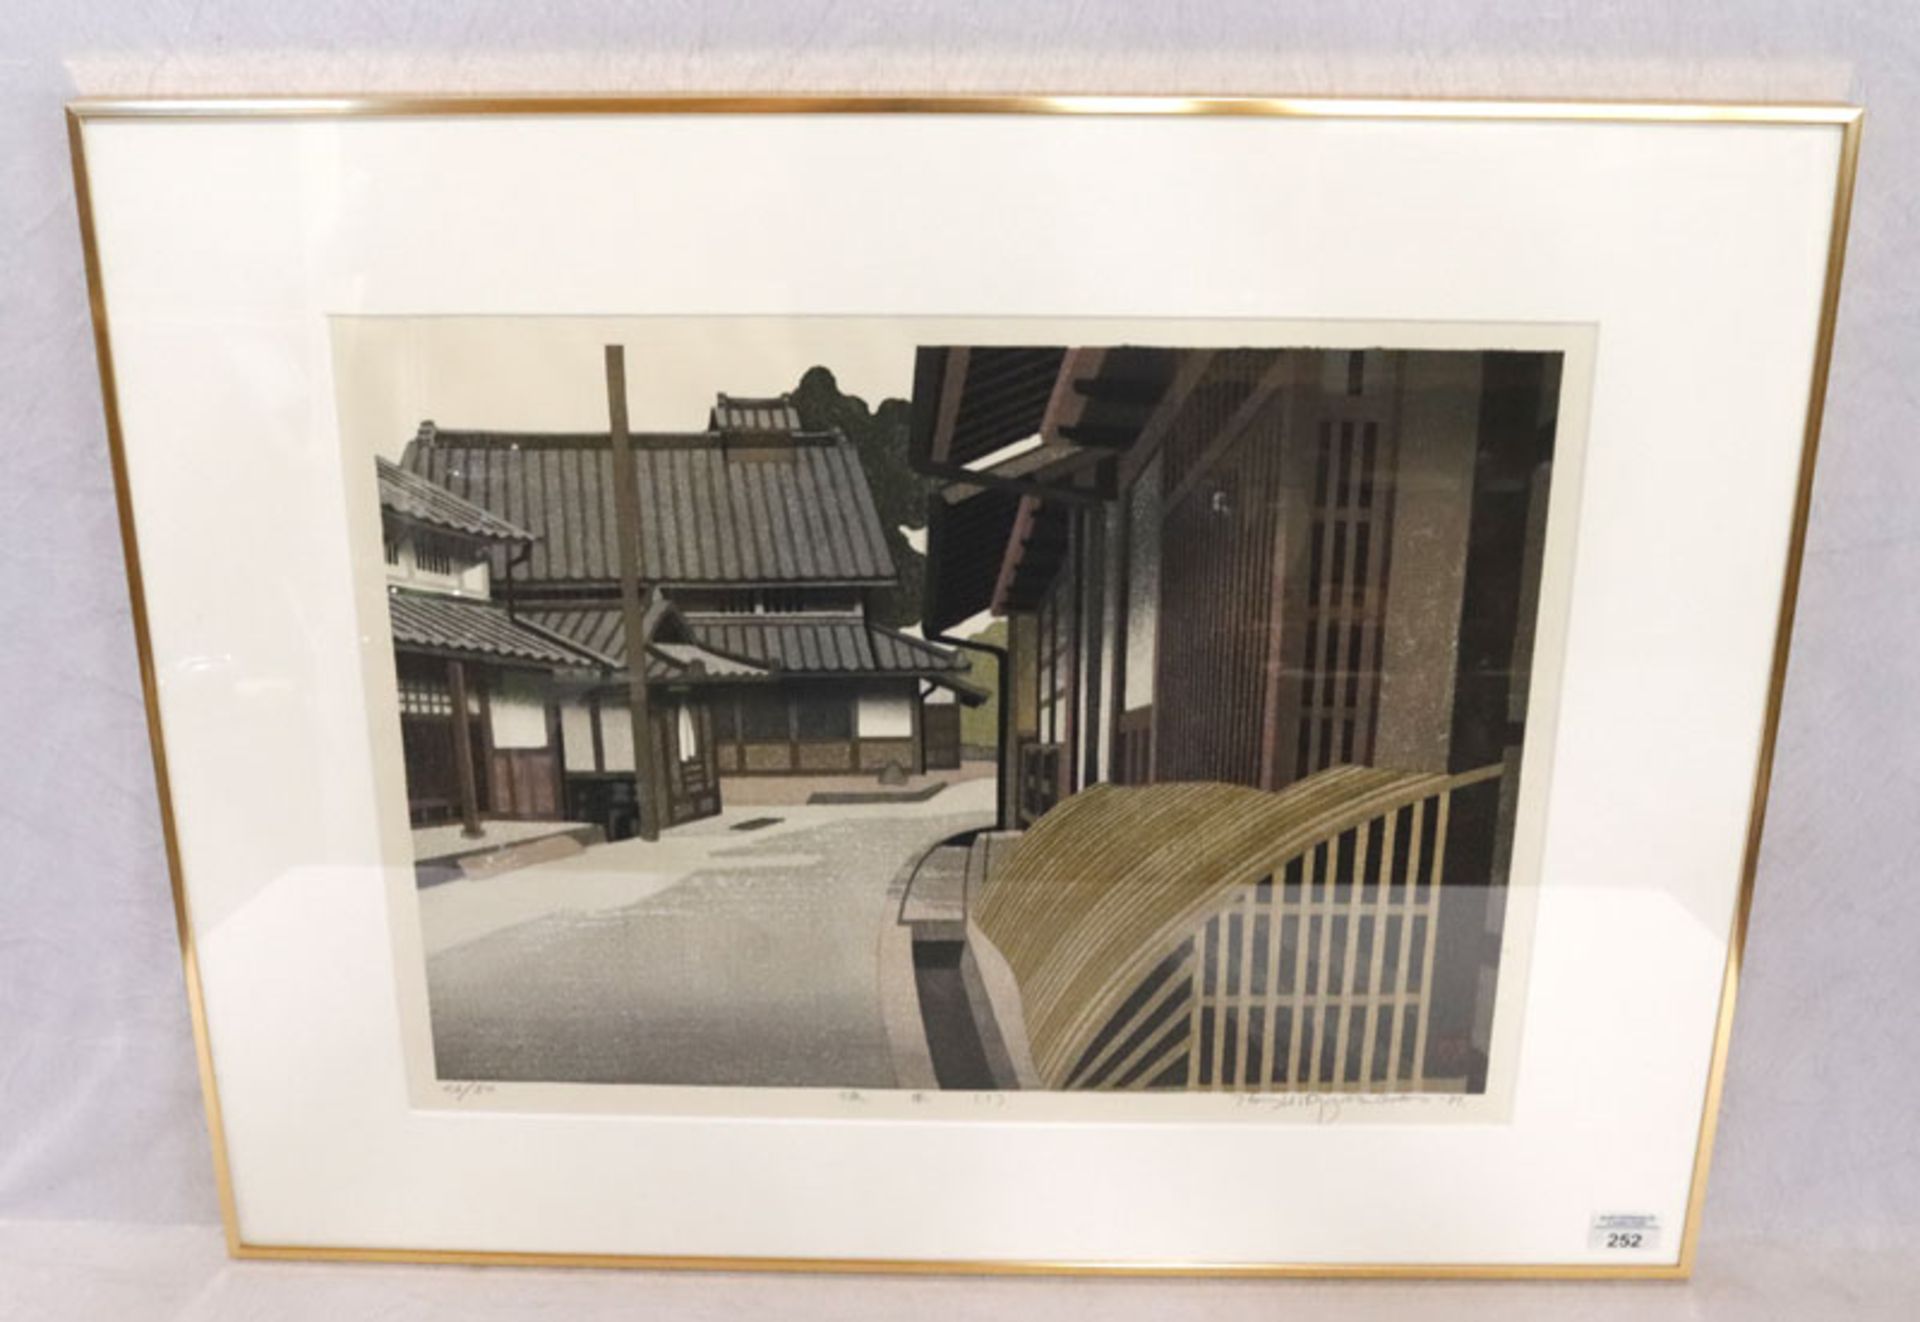 Japanische Druckgrafik 'Häuser-Szenerie', Nr. 26/50, signiert und datiert 81, mit Passepartout unter